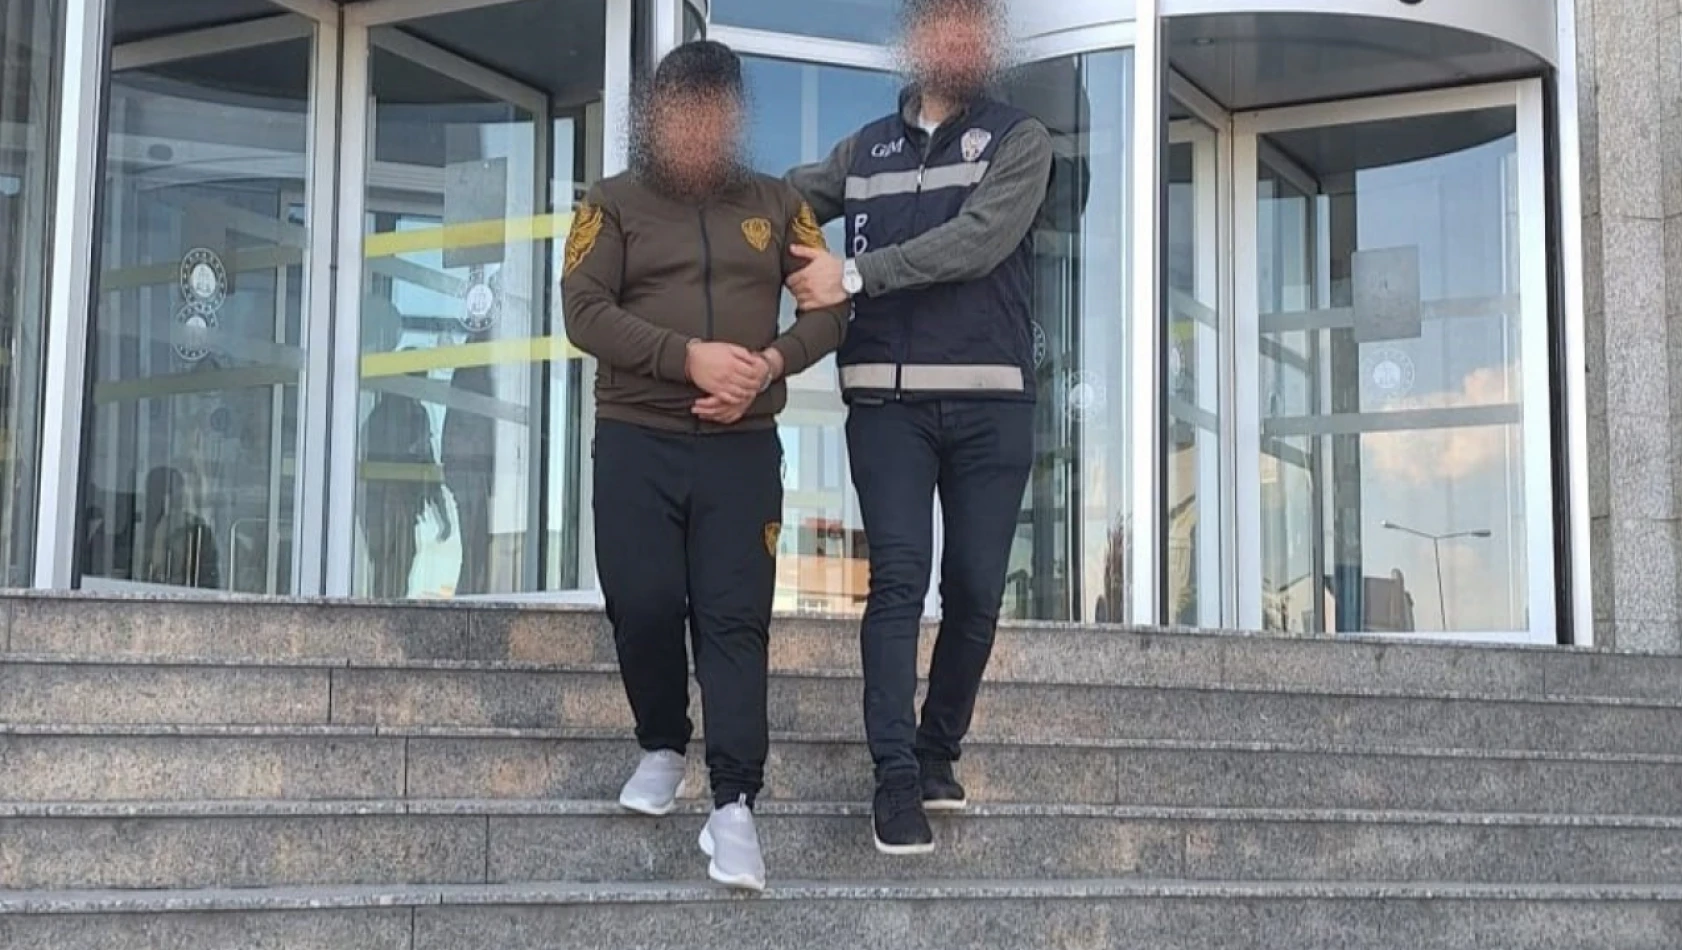 Kocaeli'de 20 göçmen yakalandı, 4 kaçakçı tutuklandı